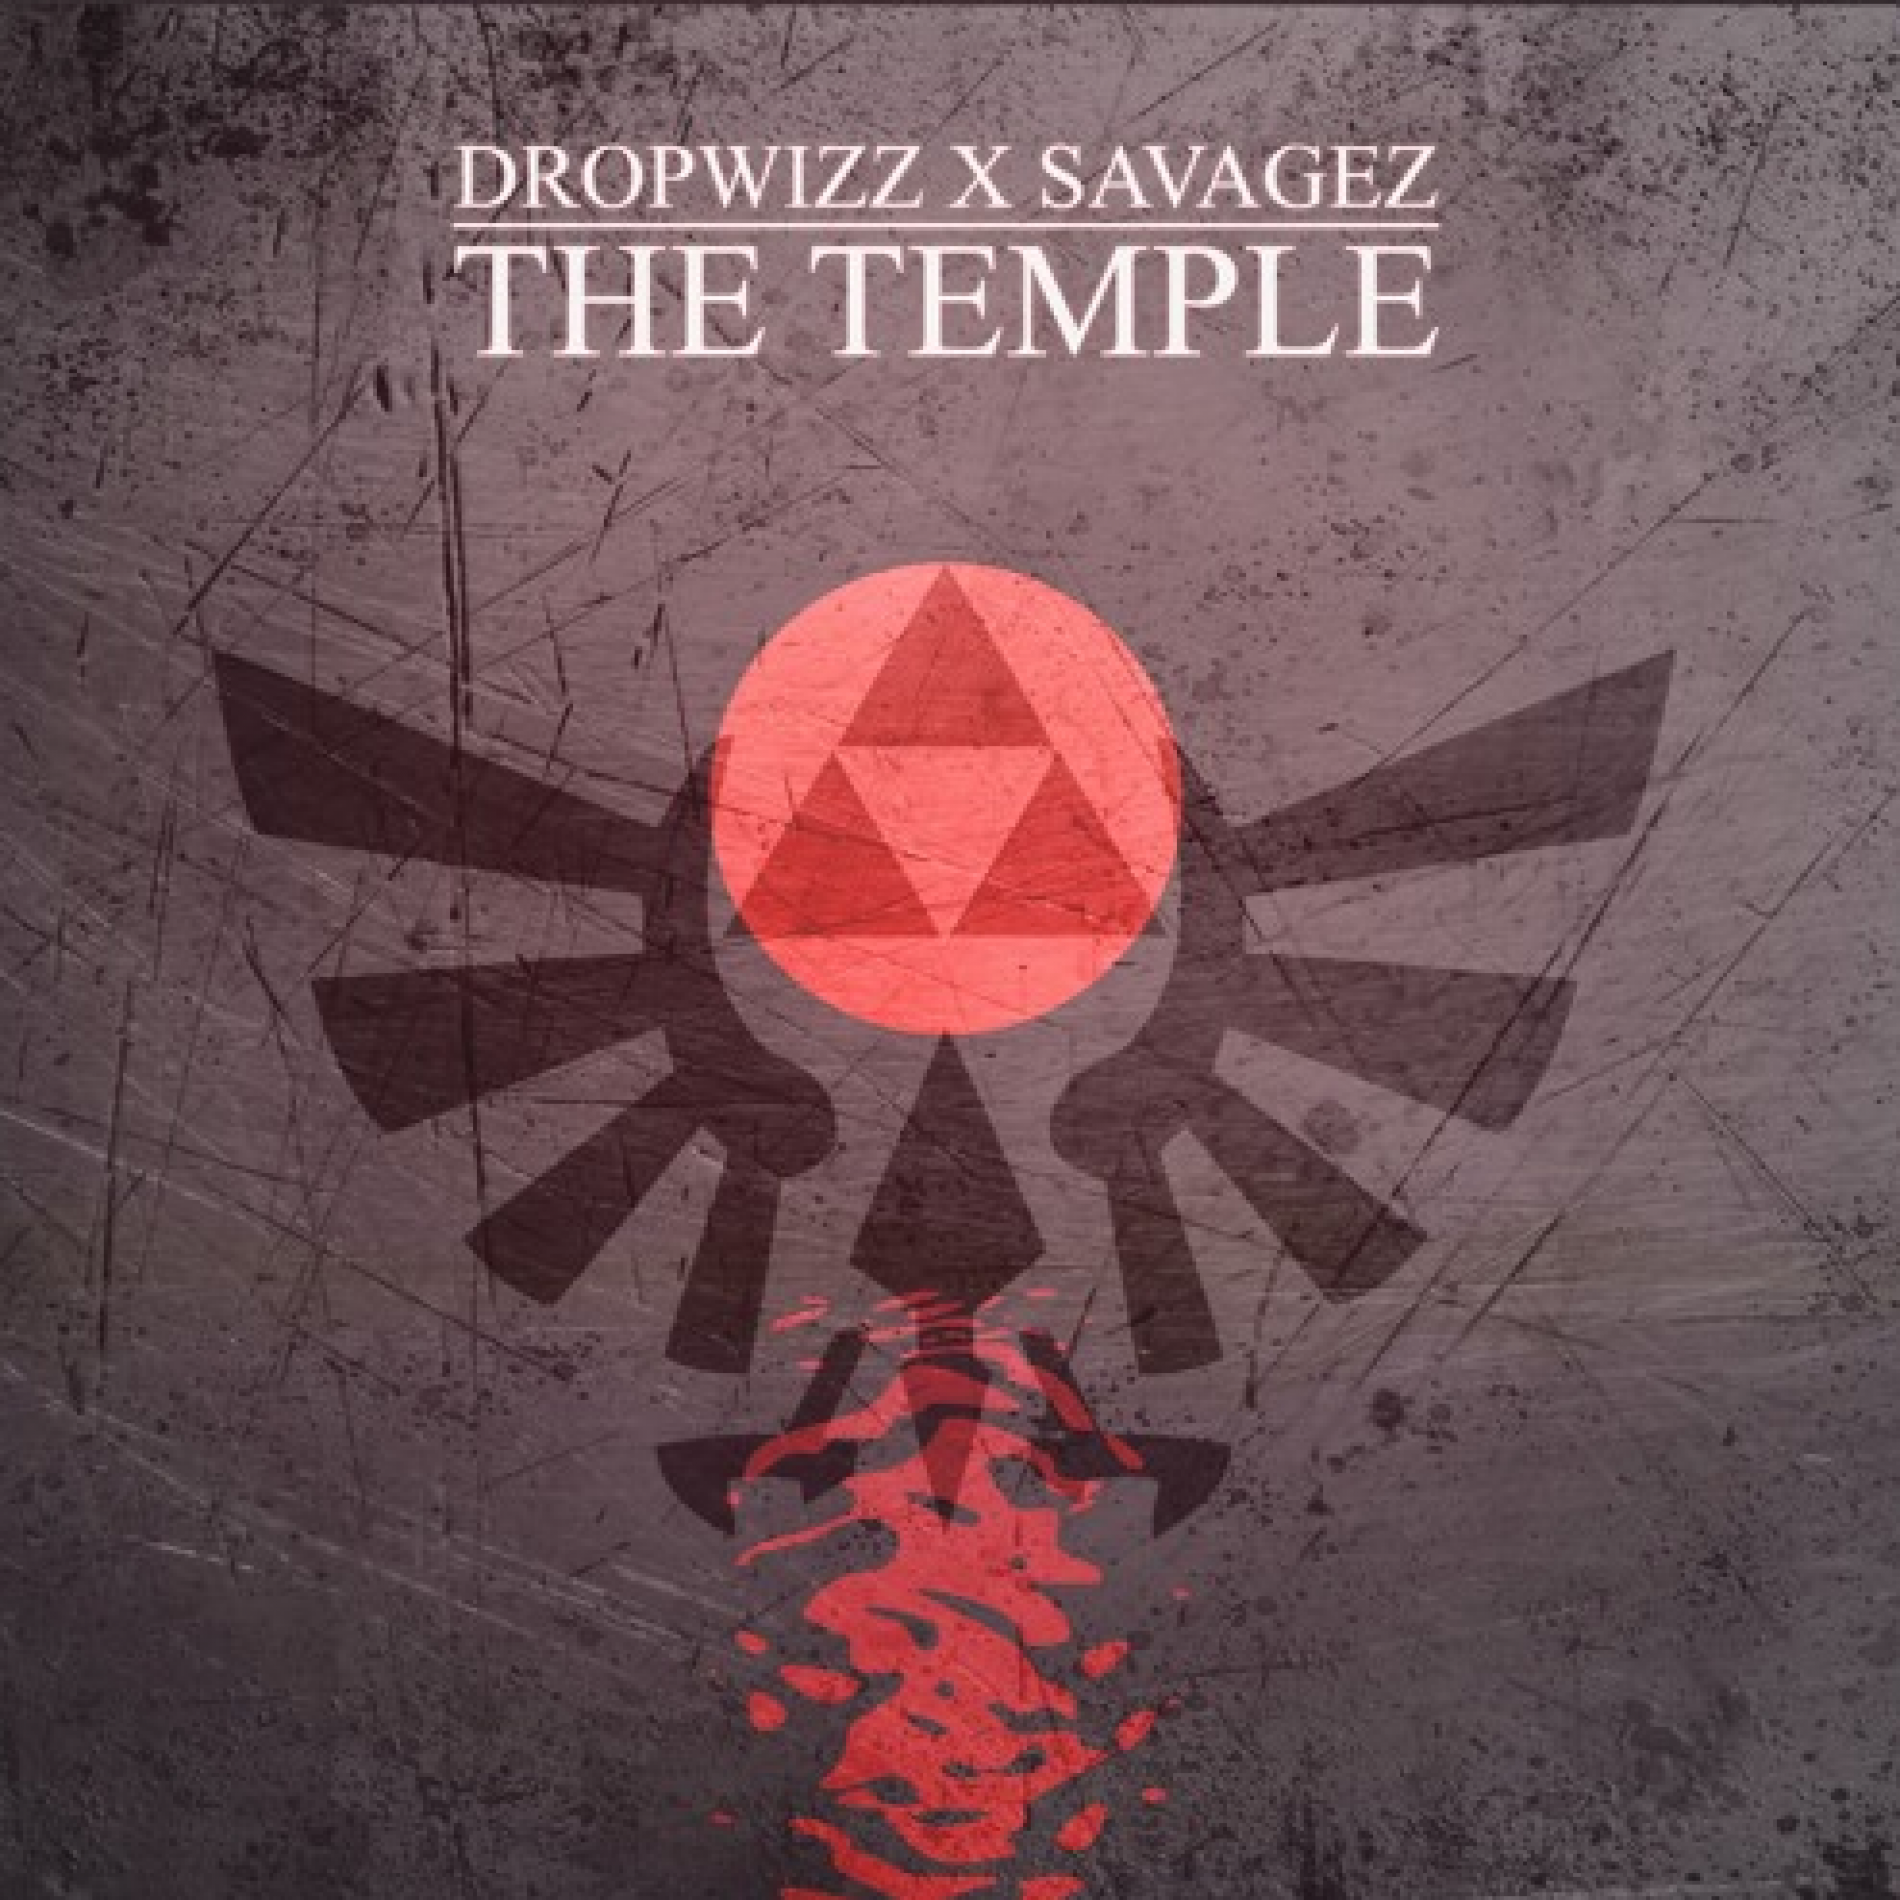 Dropwizz x Savagez – The Temple